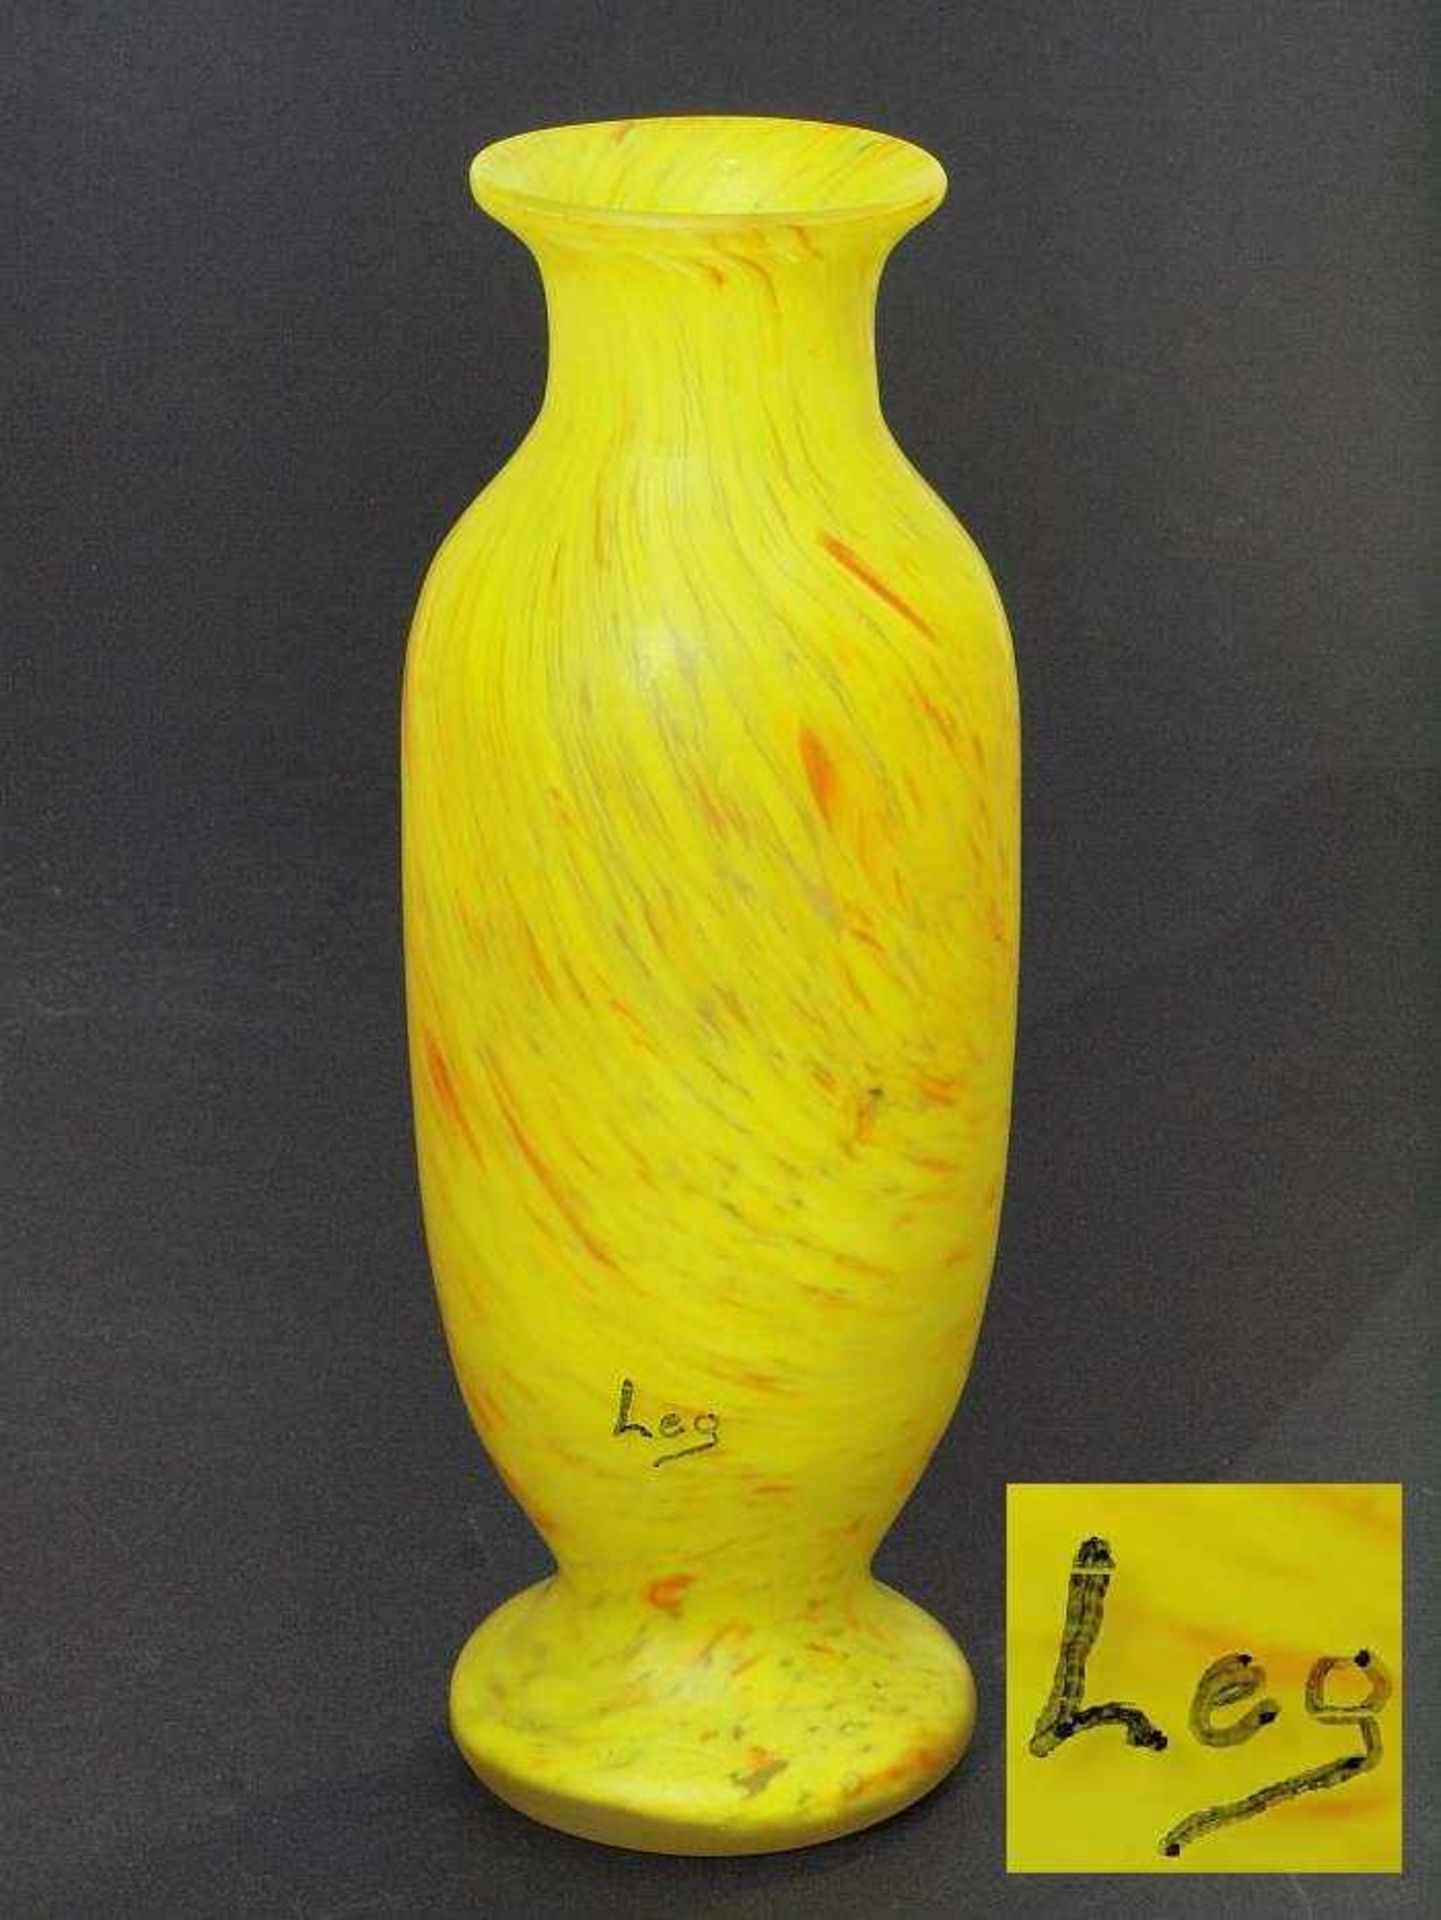 Glas-Ziervase. Glas-Ziervase. 20. Jahrhundert. Farbloses mattiertes Glas, Zwischenschichtdekor aus